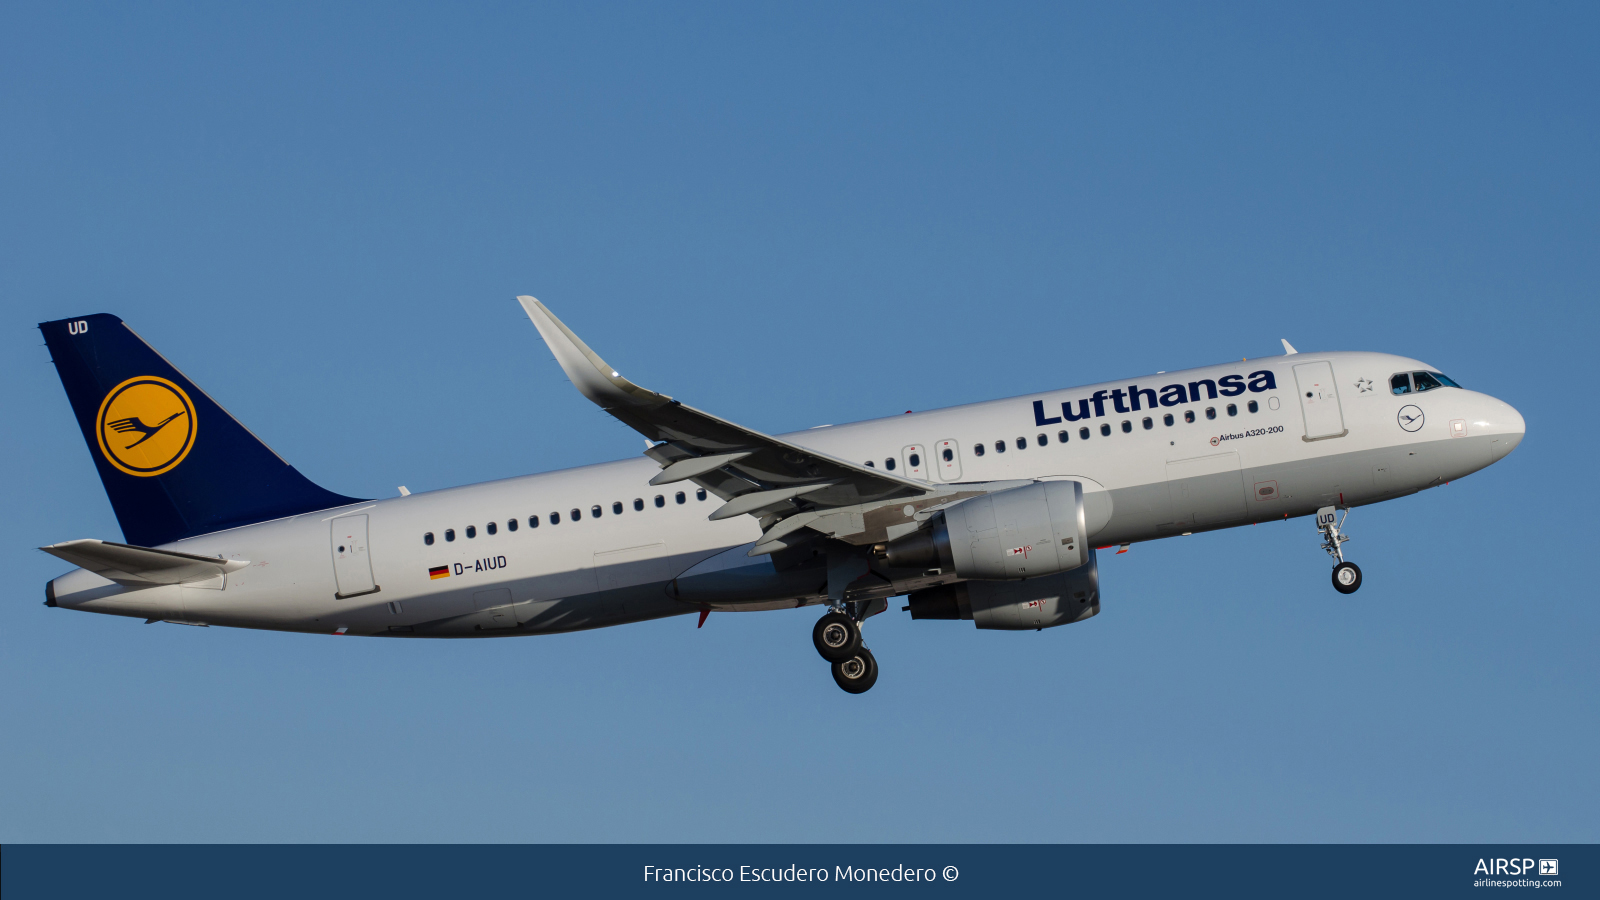 Lufthansa  Airbus A320  D-AIUD